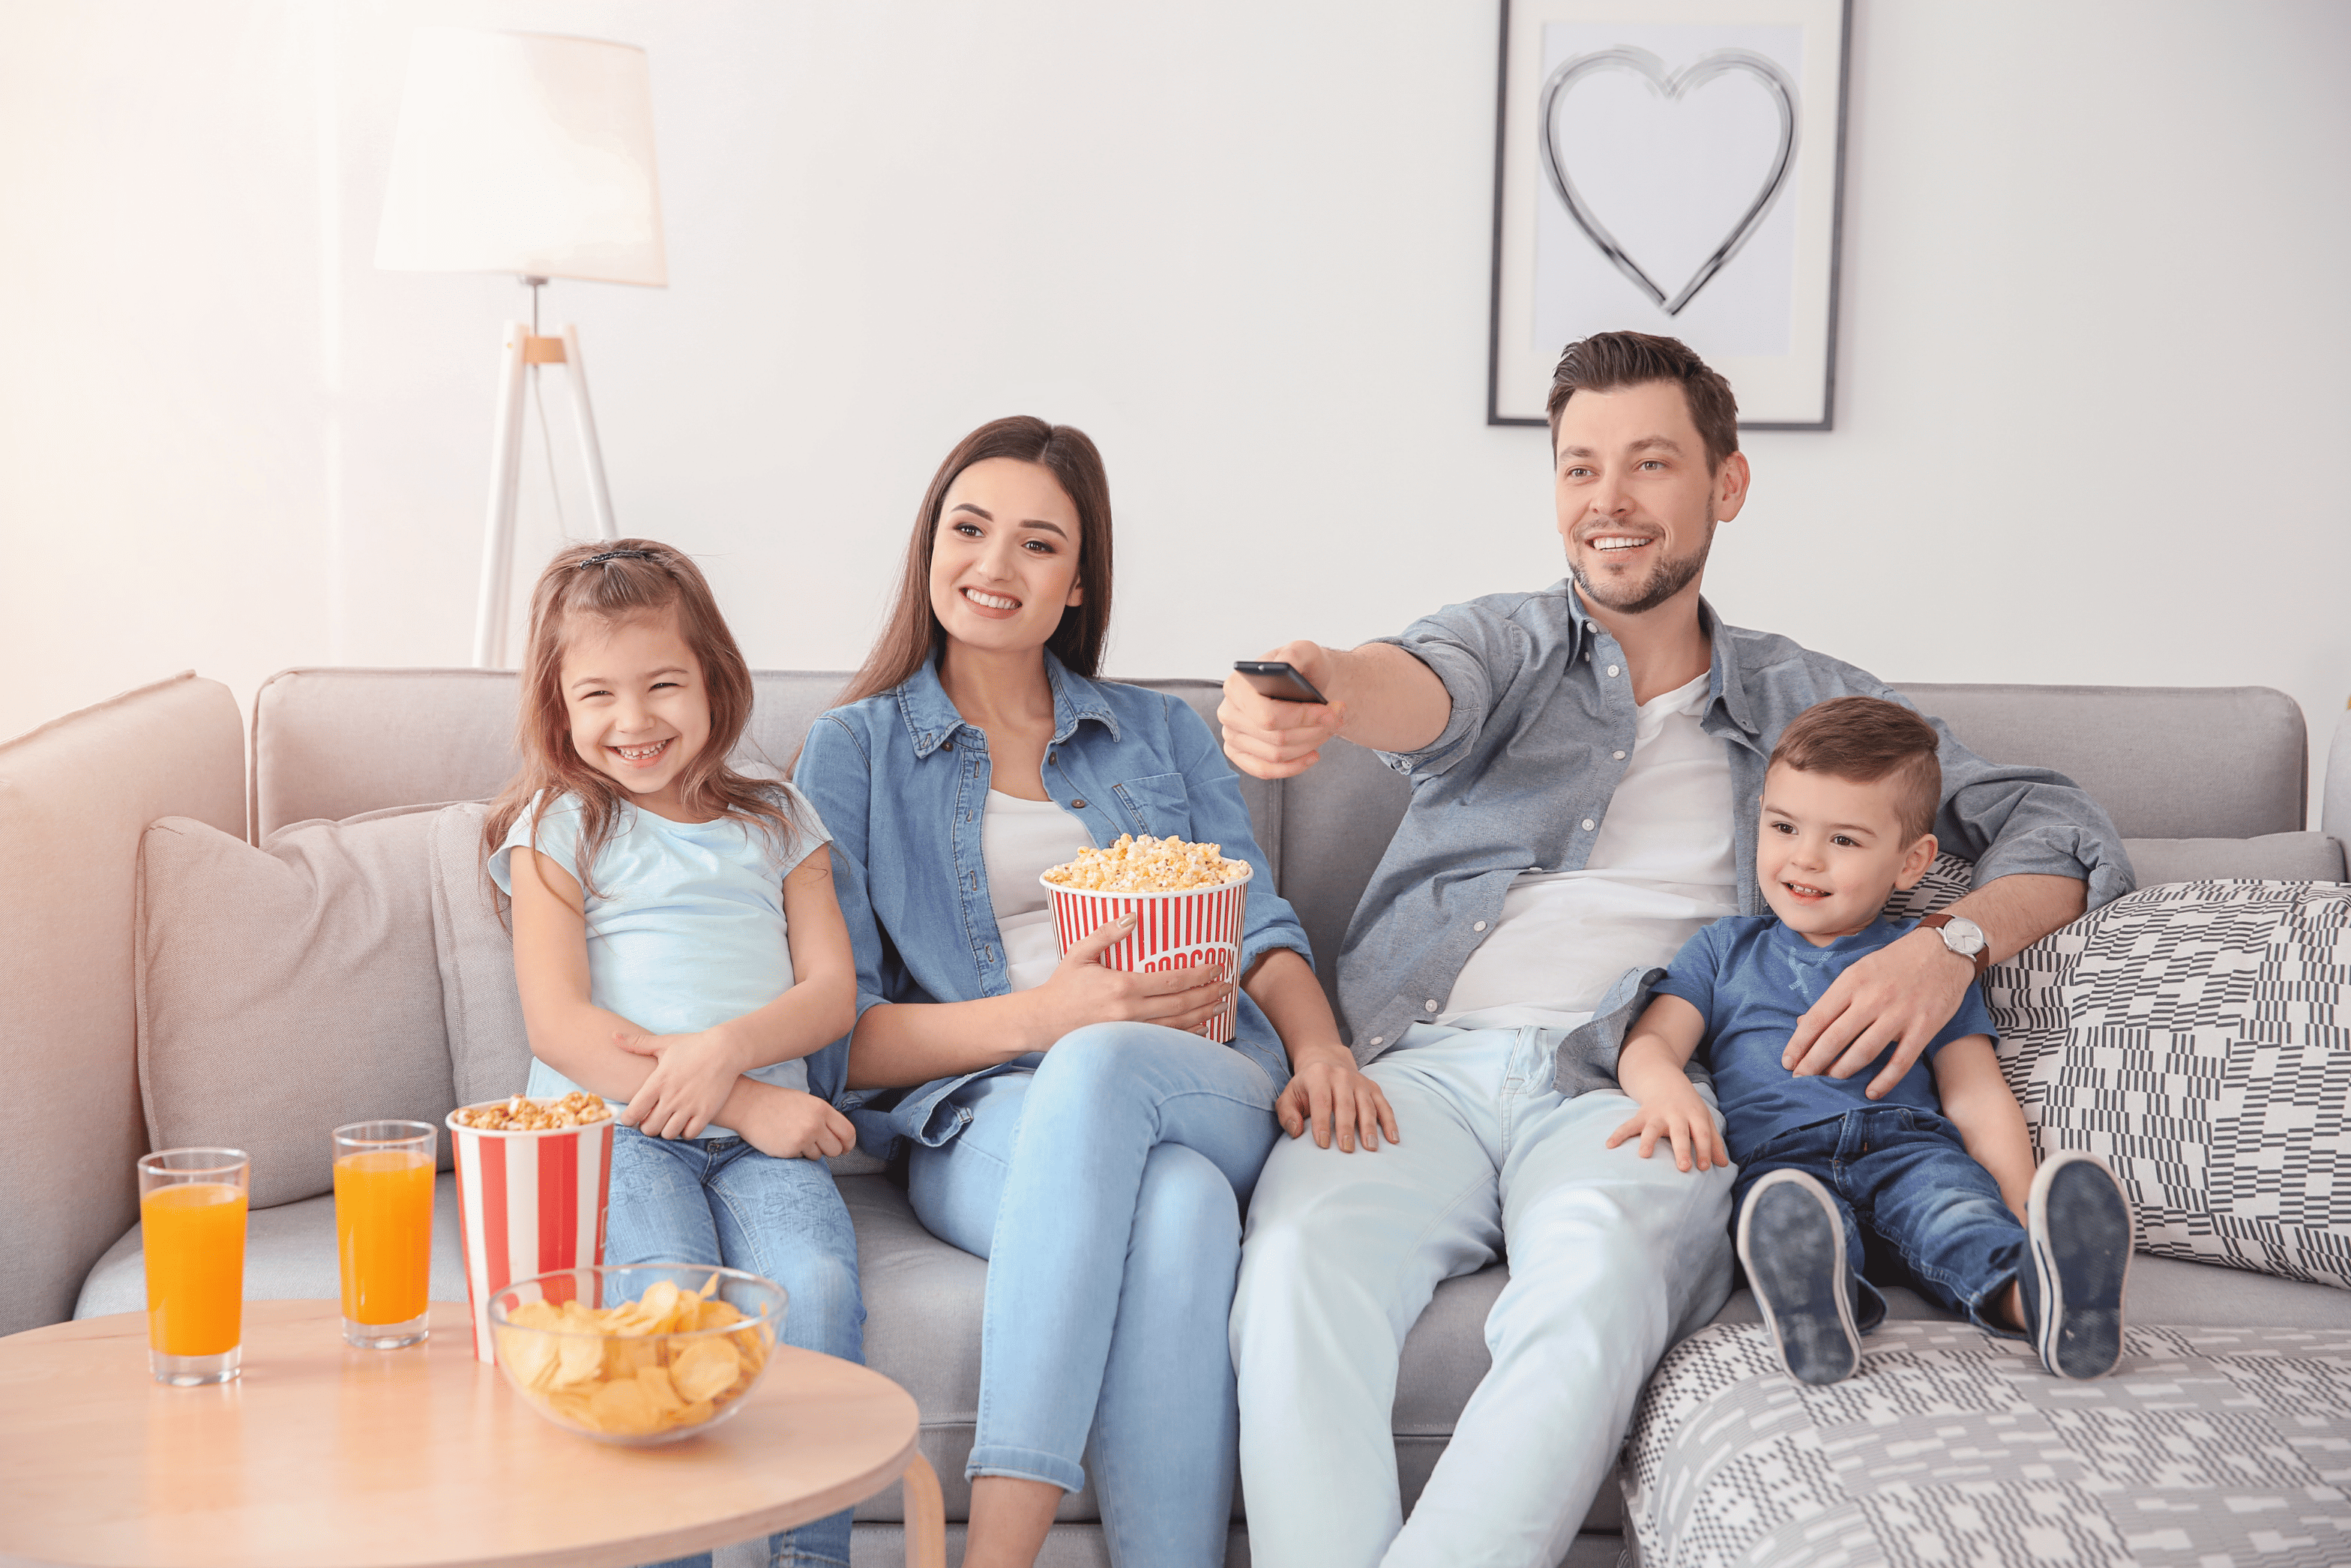 Telewizor odpowiedni dla całej rodziny – czy wiesz, co to jest Smart TV?